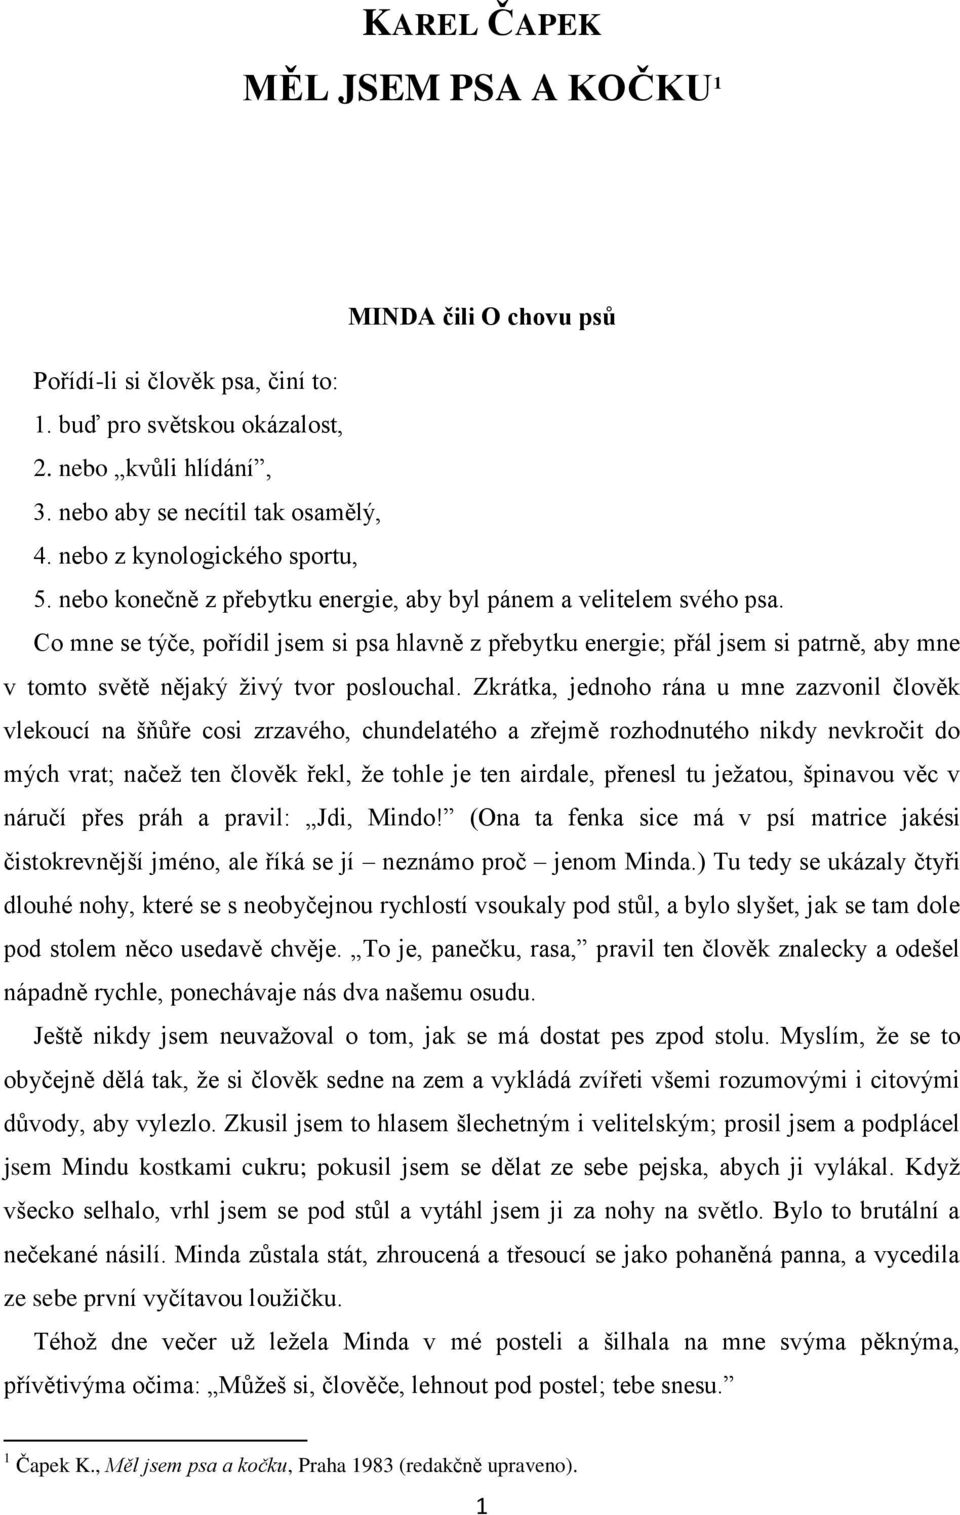 KAREL ČAPEK MĚL JSEM PSA A KOČKU 1 - PDF Stažení zdarma